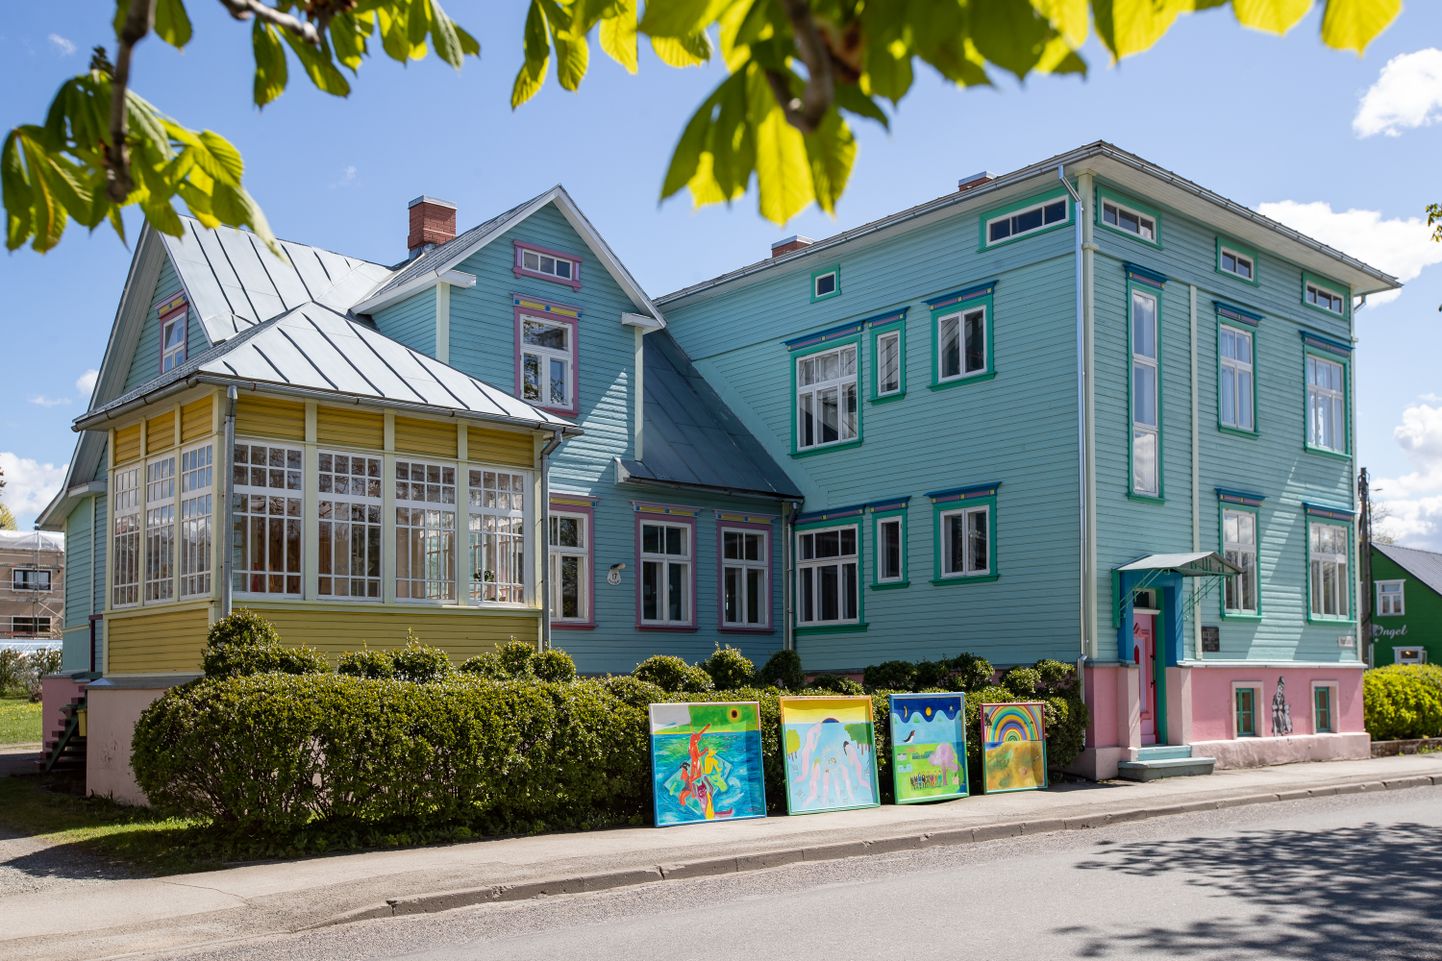 Расписанный веселыми красками дом Рихо и Тамары Хютт весной превращается в выставочный зал под открытым небом, что радует горожан и привлекает туристов.